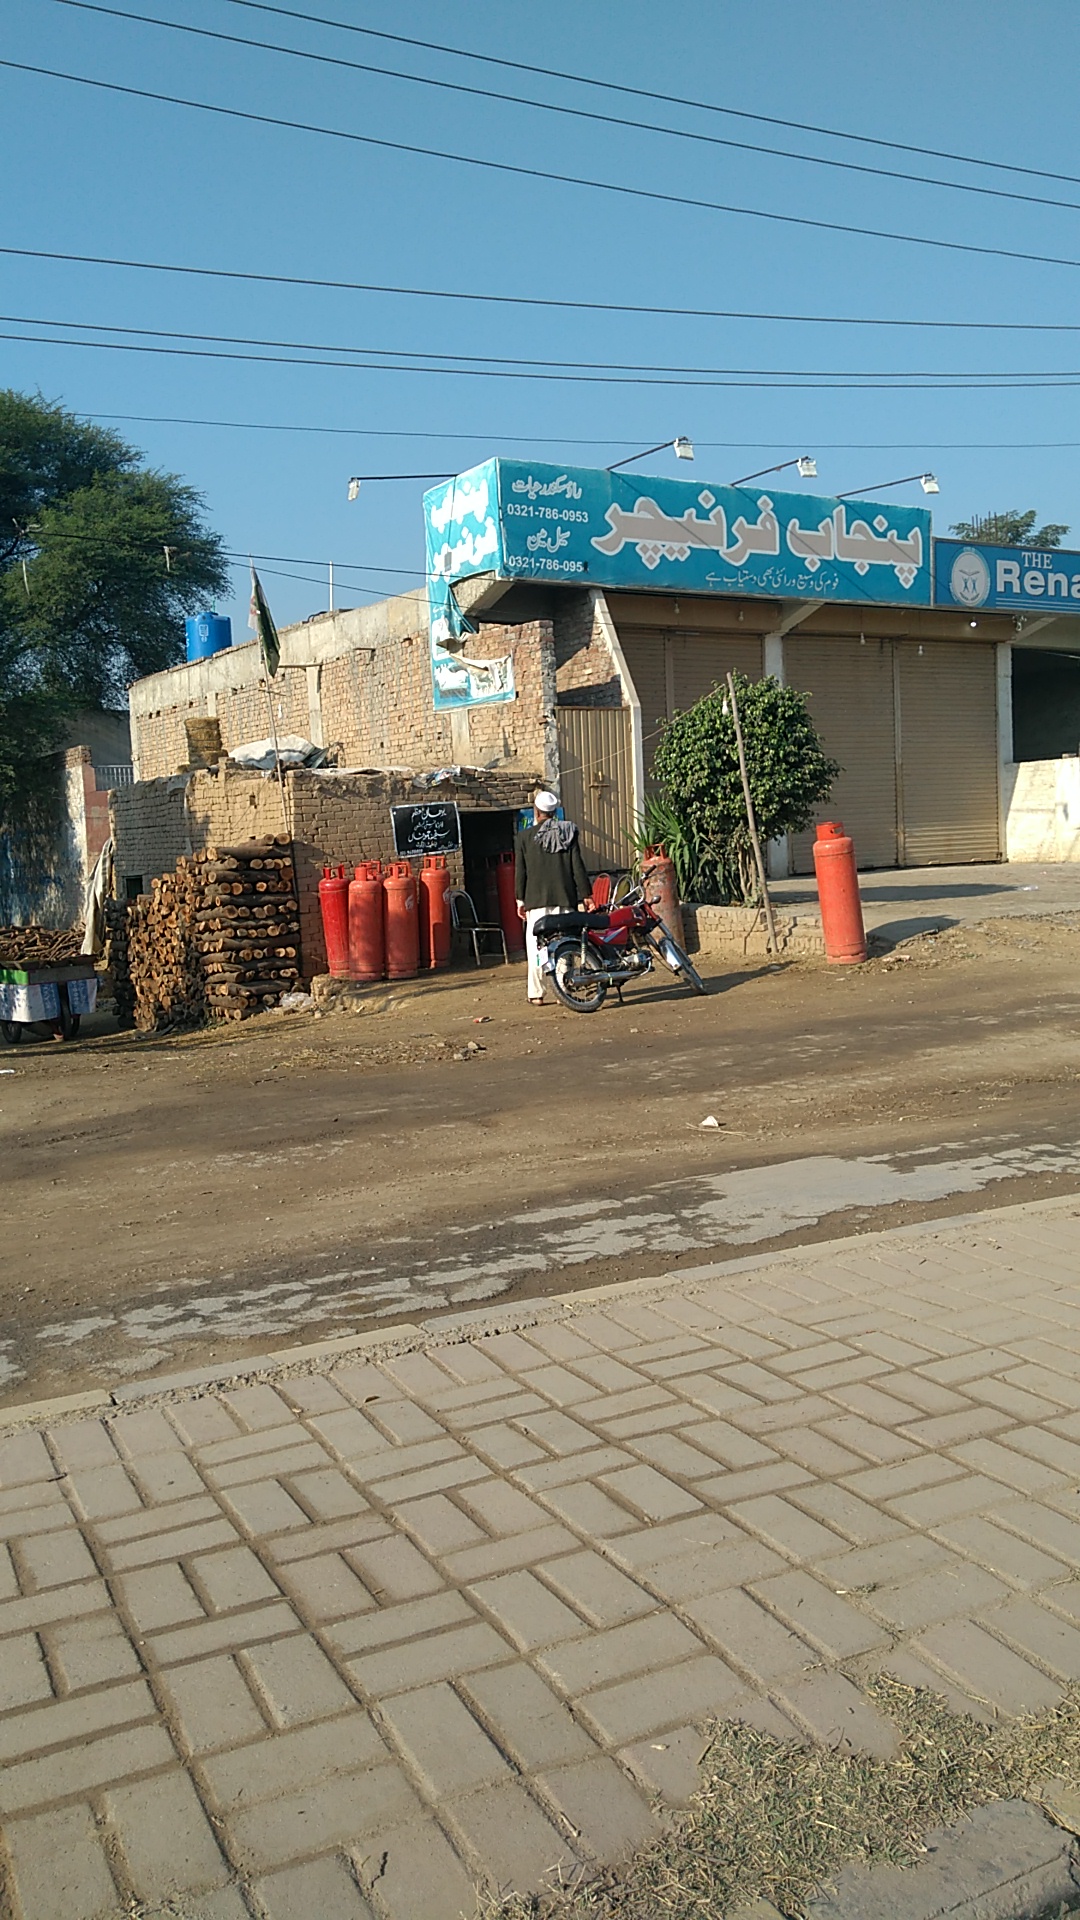 Punjab Furniture